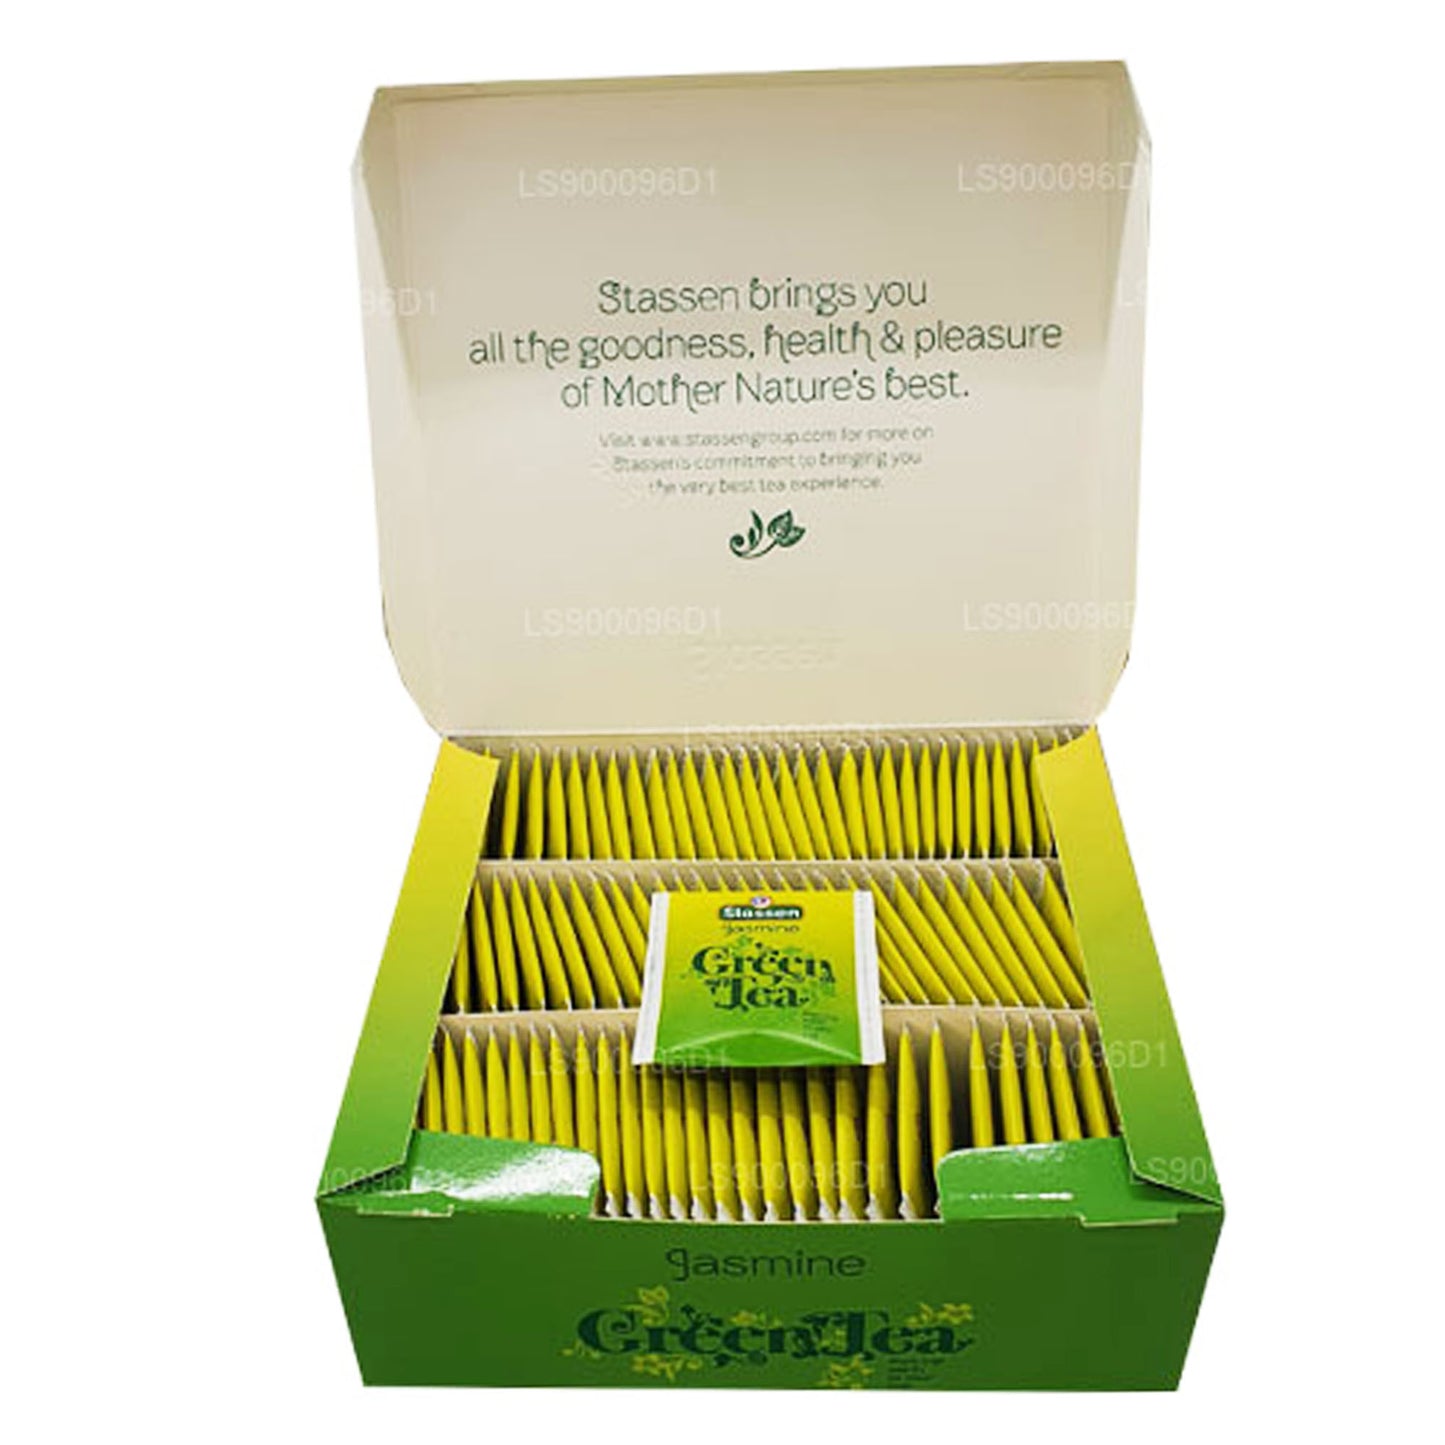 Stassen Jasmijn groene thee (150 g) 100 theezakjes